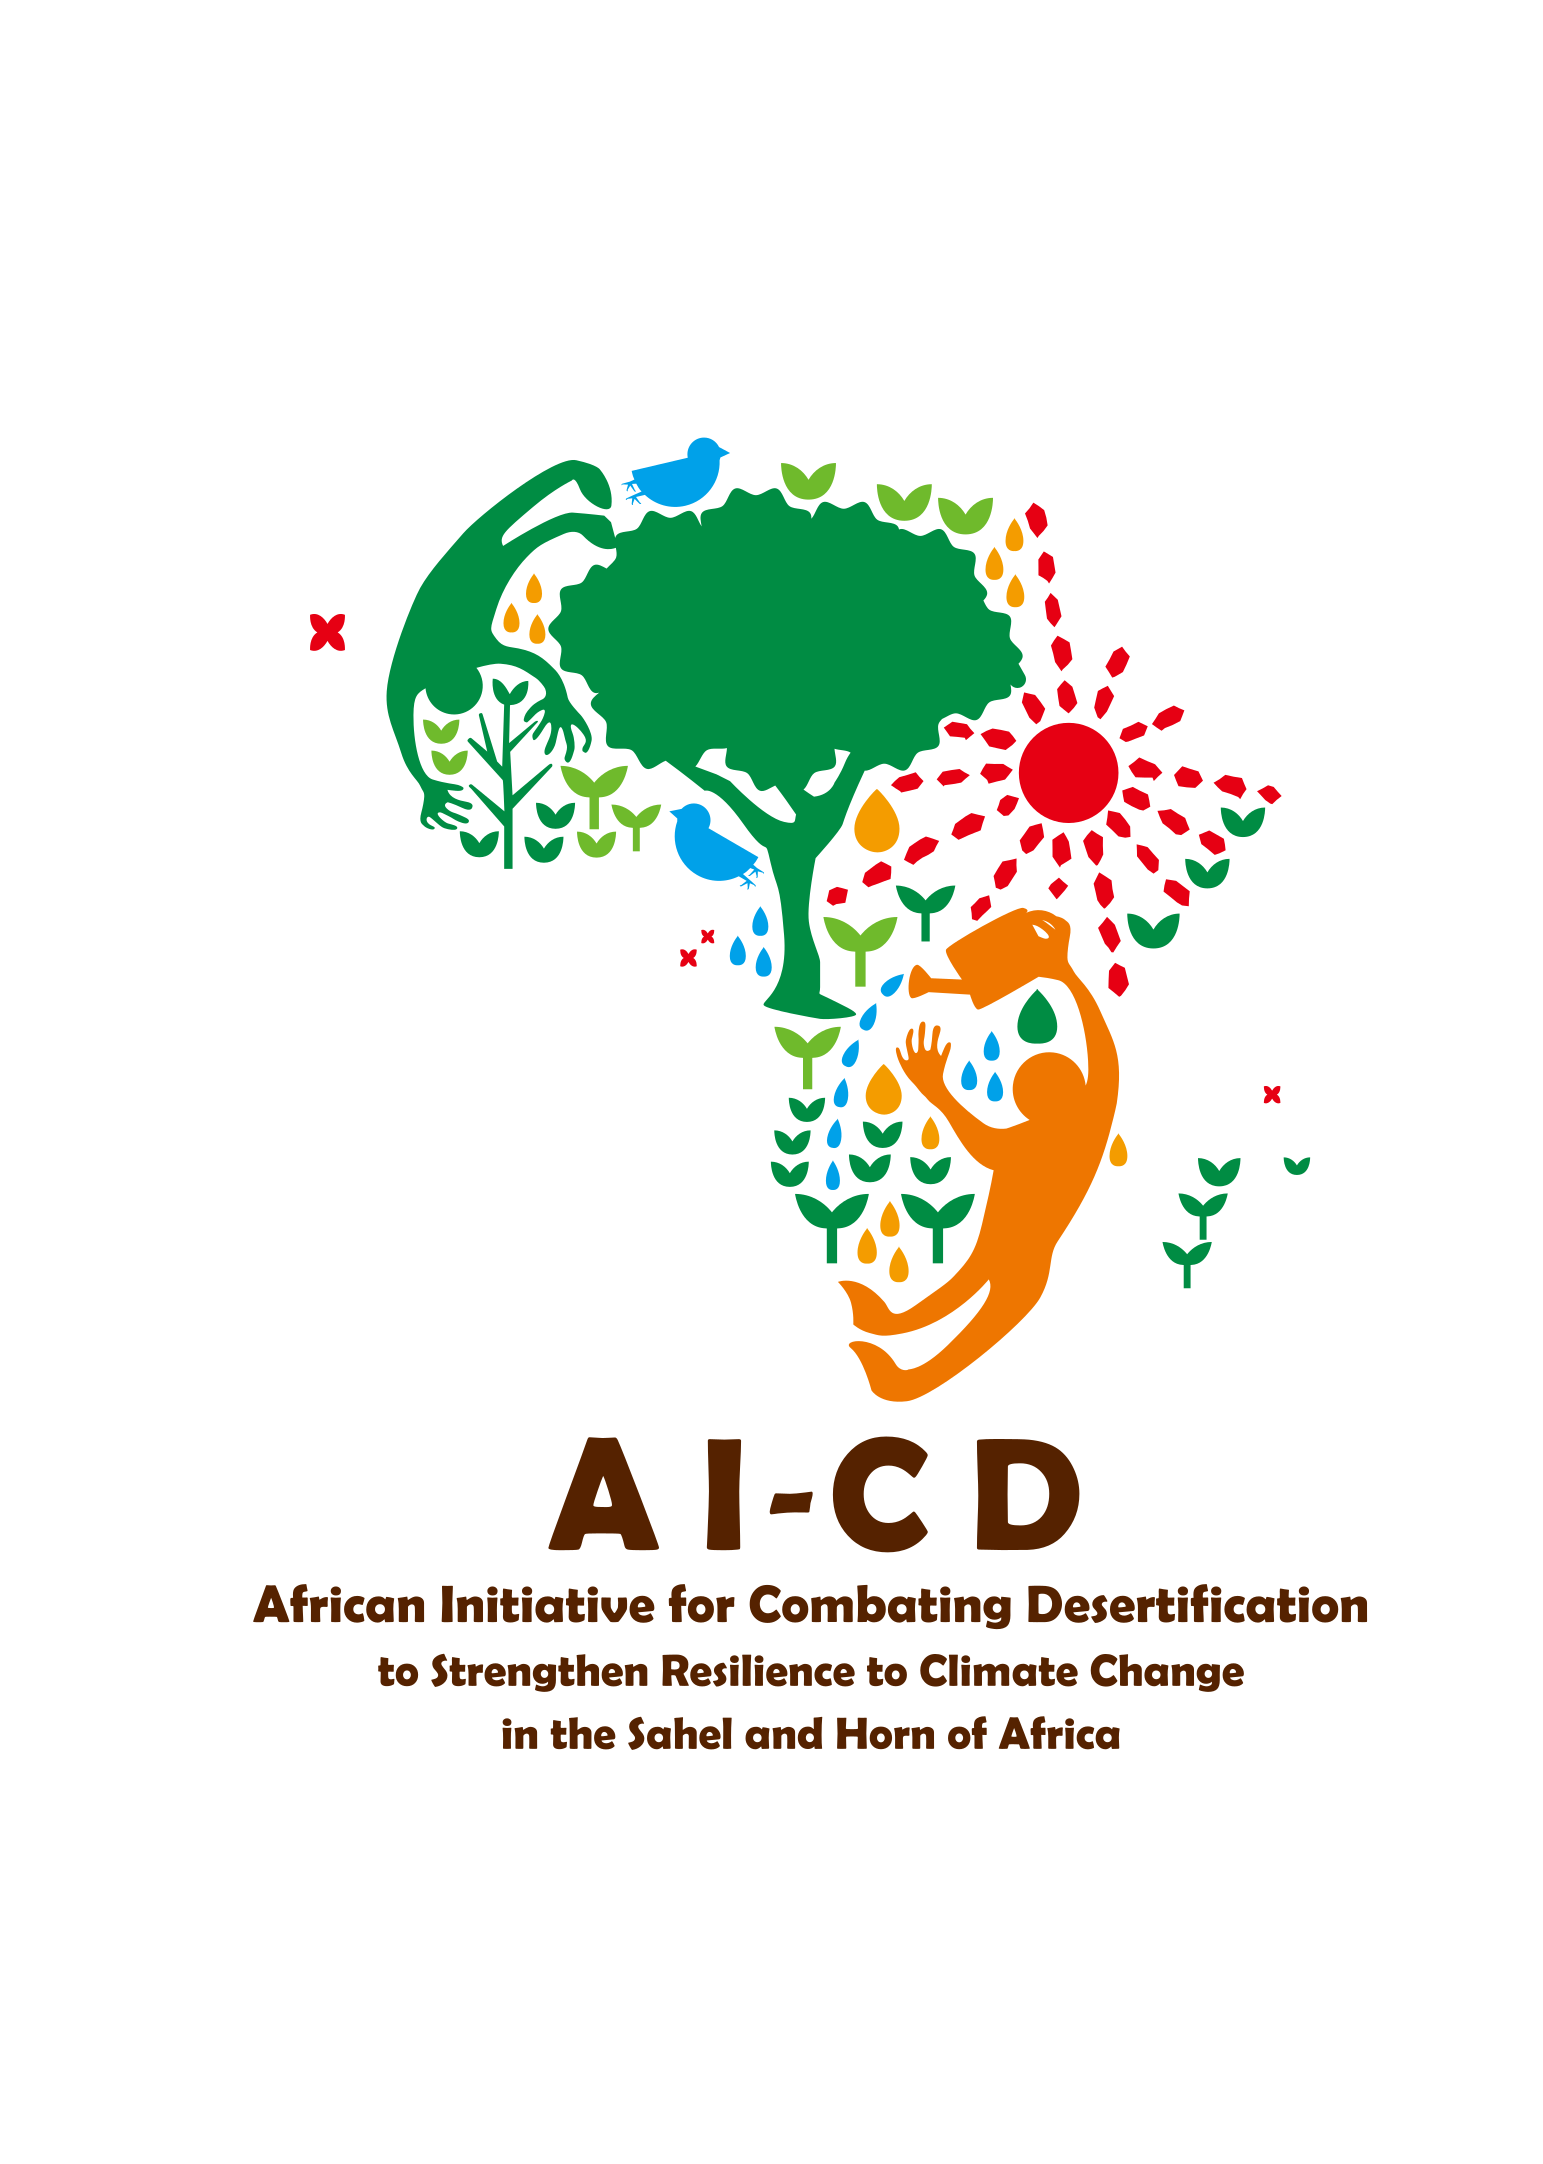 Image: logo de l'Initiative africaine pour lutter contre la desertification (AI-CD)